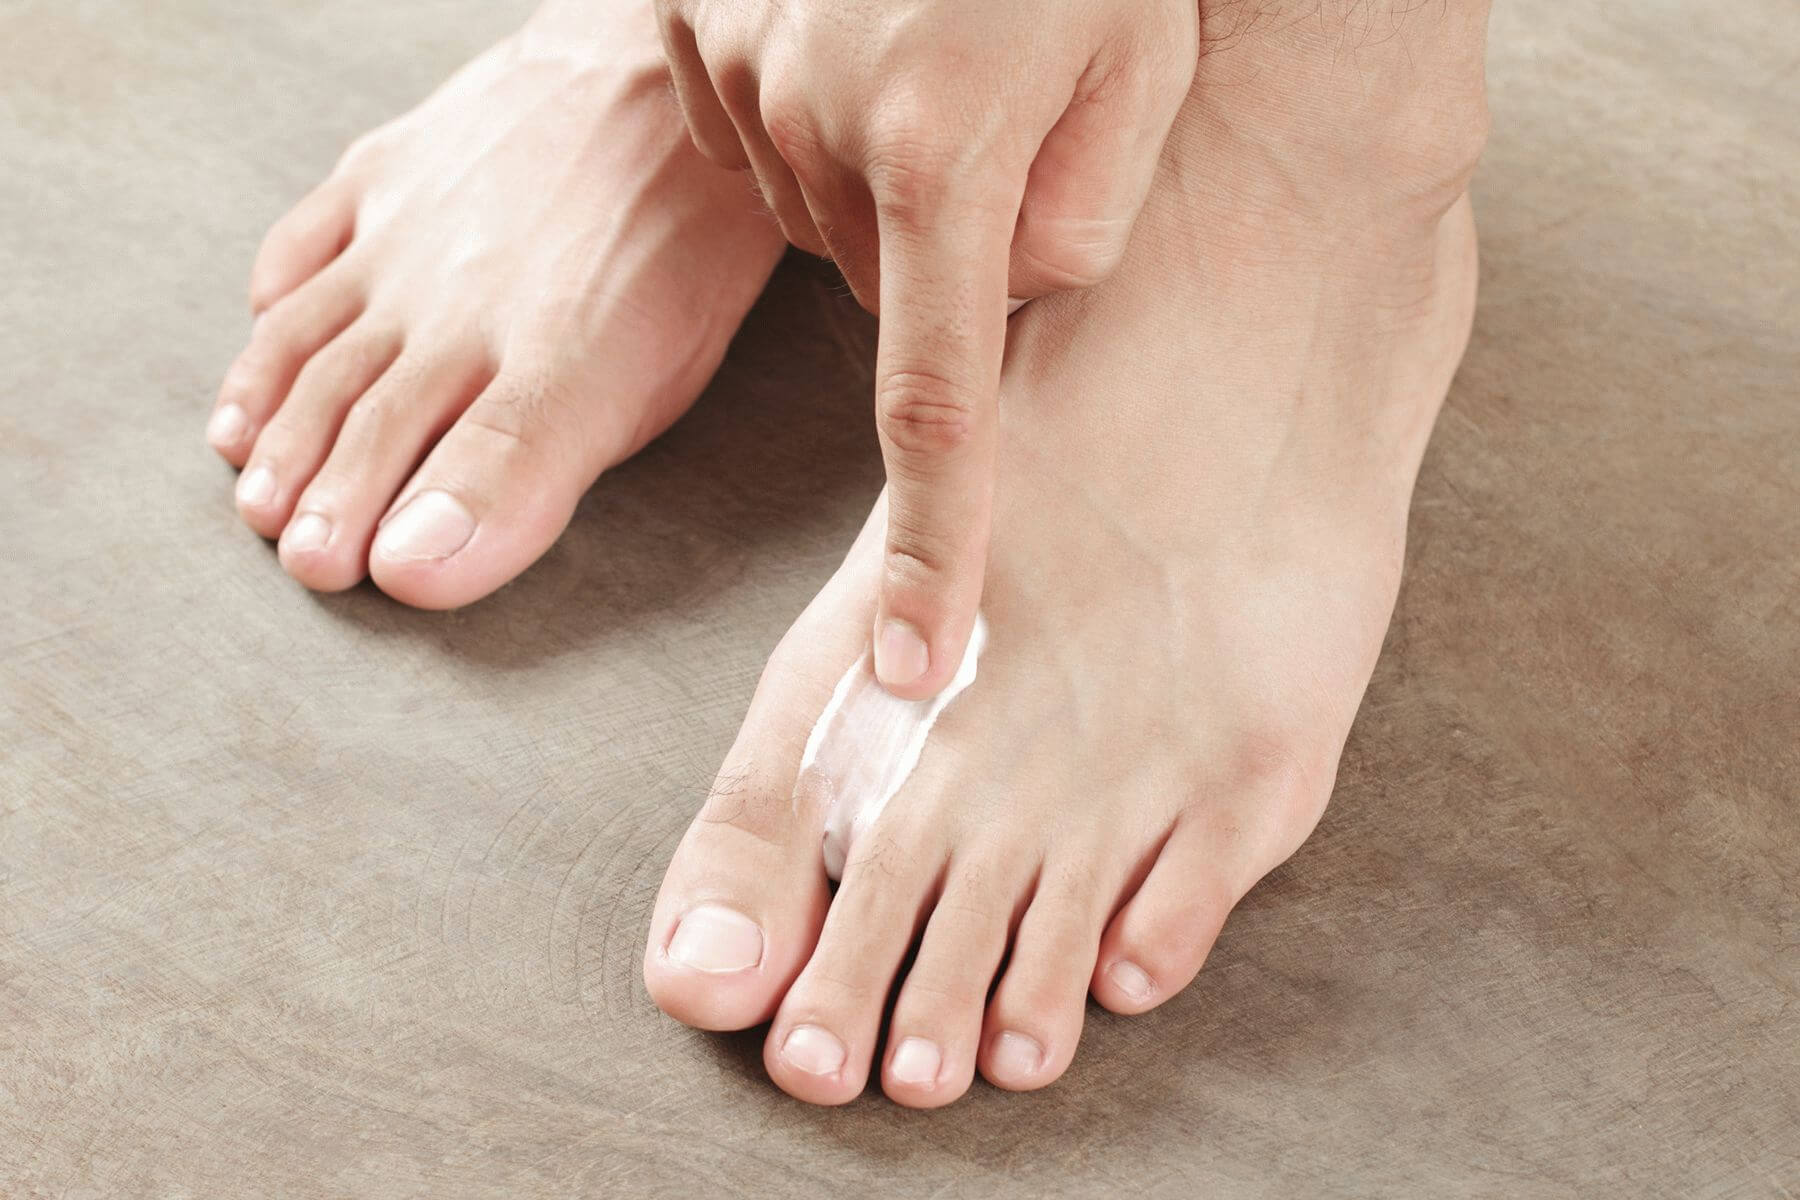 грибок на коже пальцев ног фото